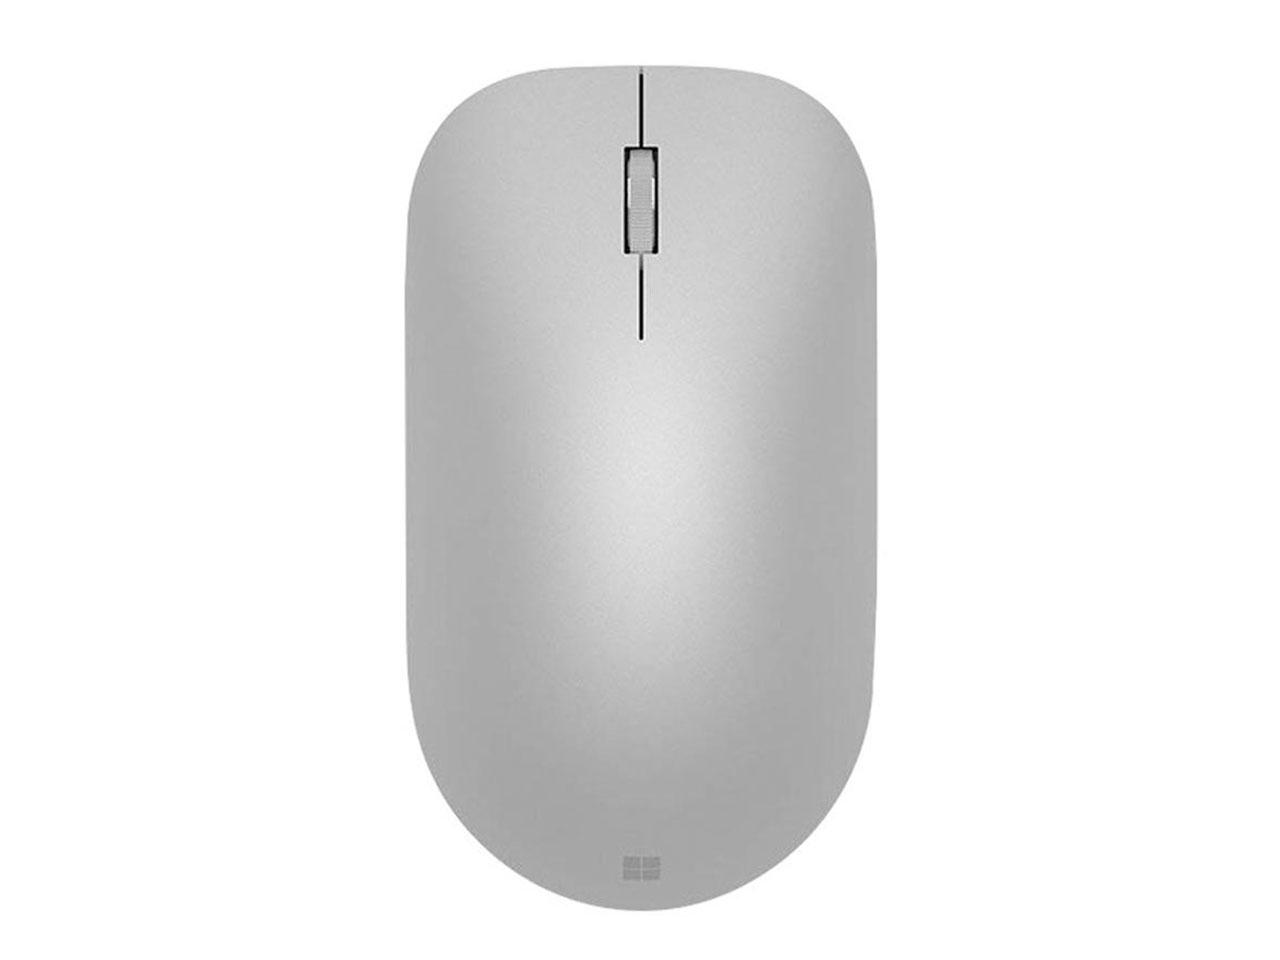 Bezdrátová myš MICROSOFT Surface Mouse, stříbrná (WS3-0002)